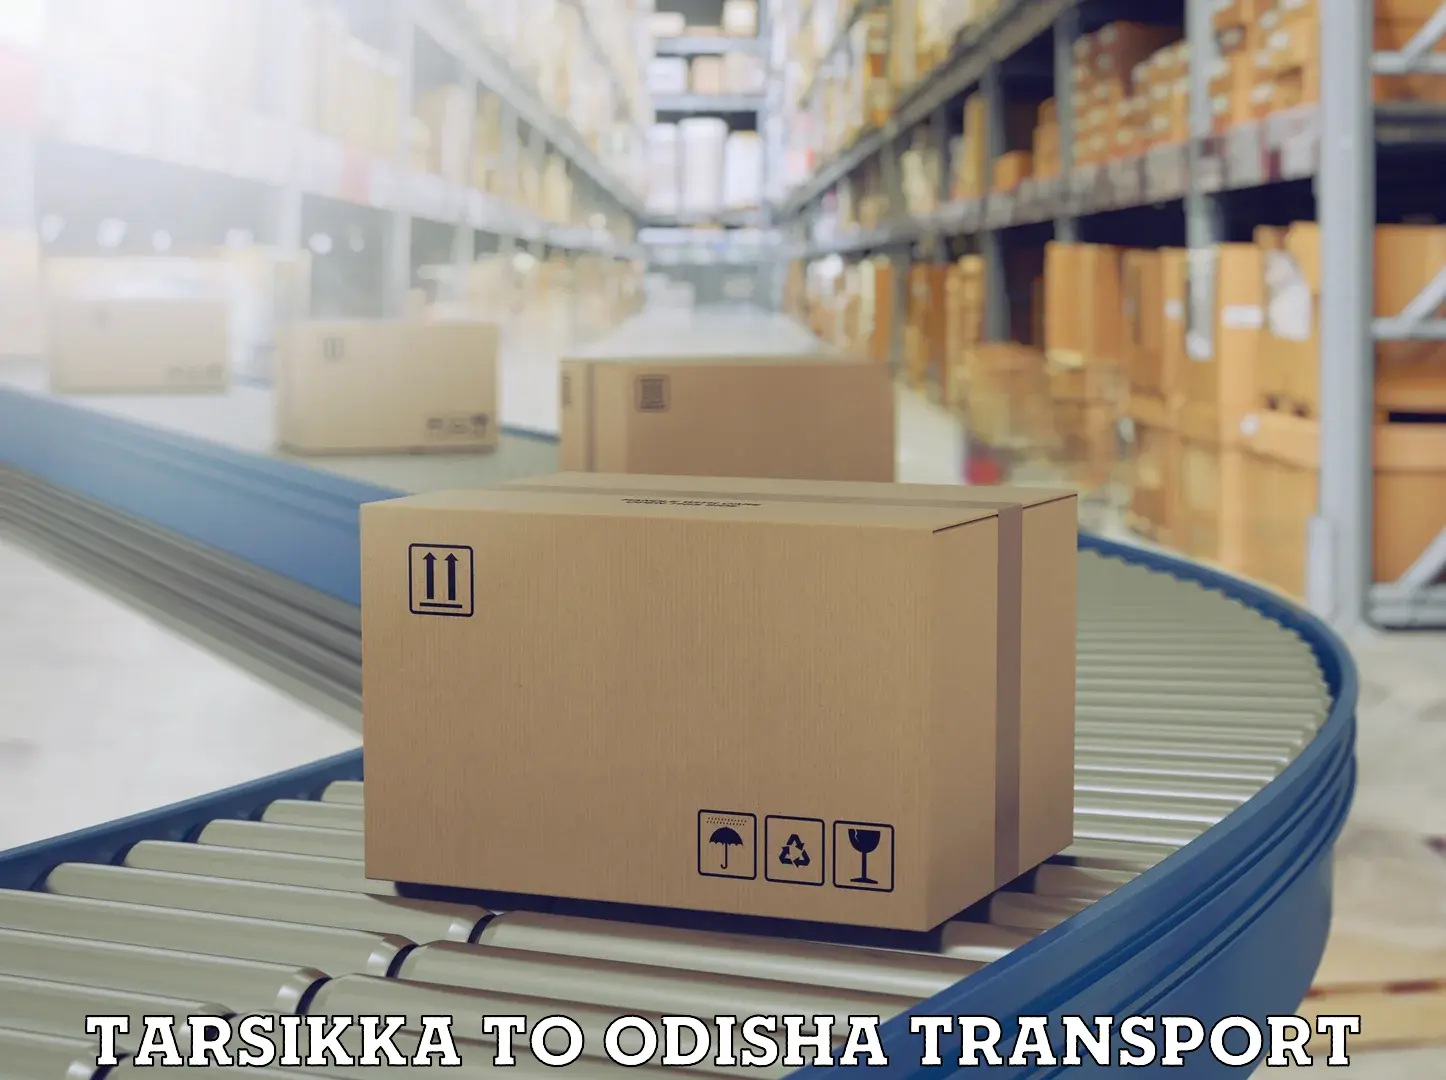 Nearest transport service in Tarsikka to Paikana